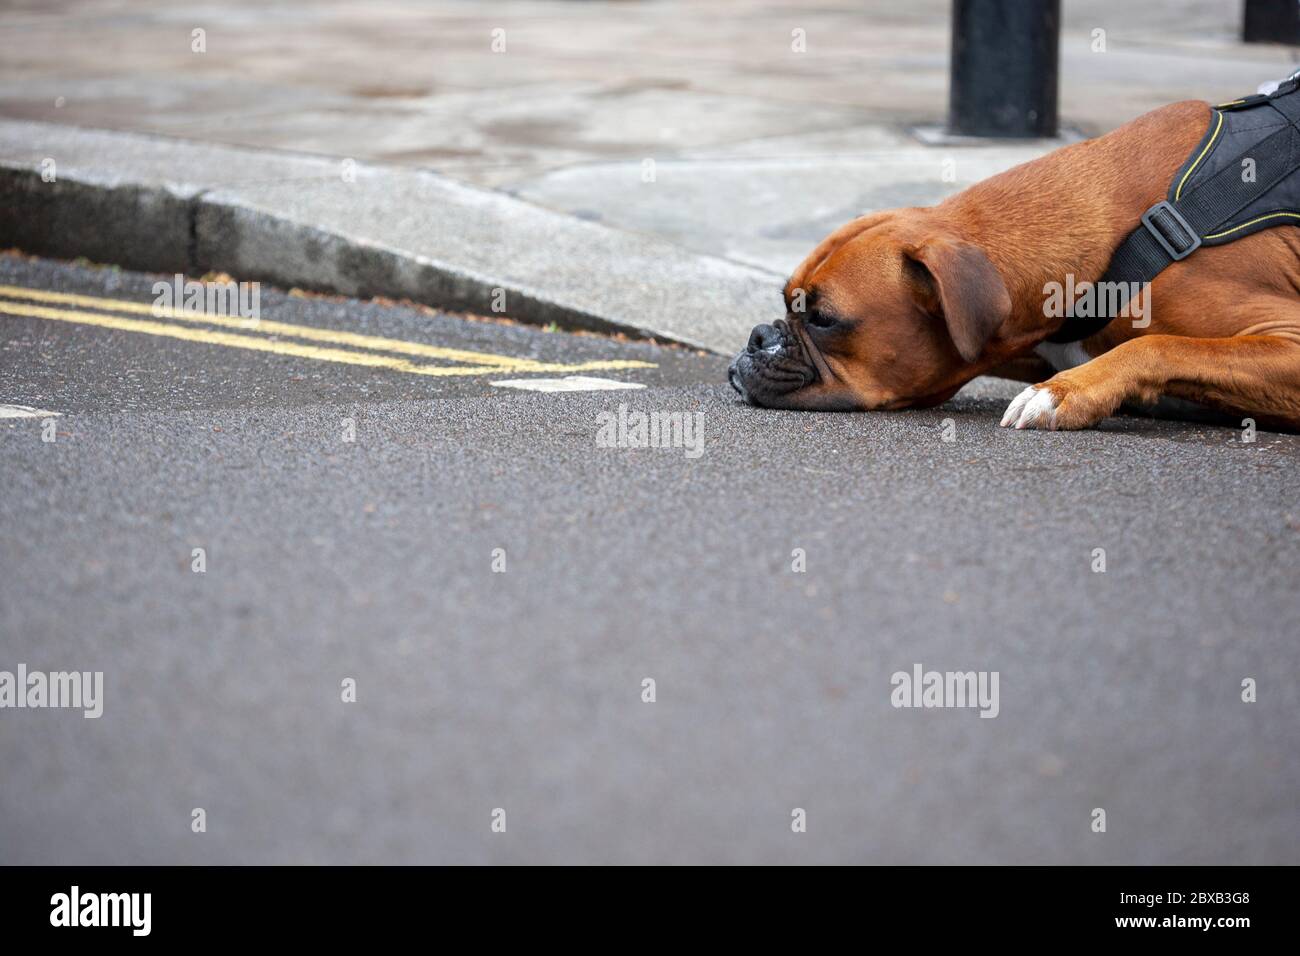 Chien boxeur couché, sa tête reposant sur la route. Parliament Square, Londres, Angleterre, Royaume-Uni Banque D'Images